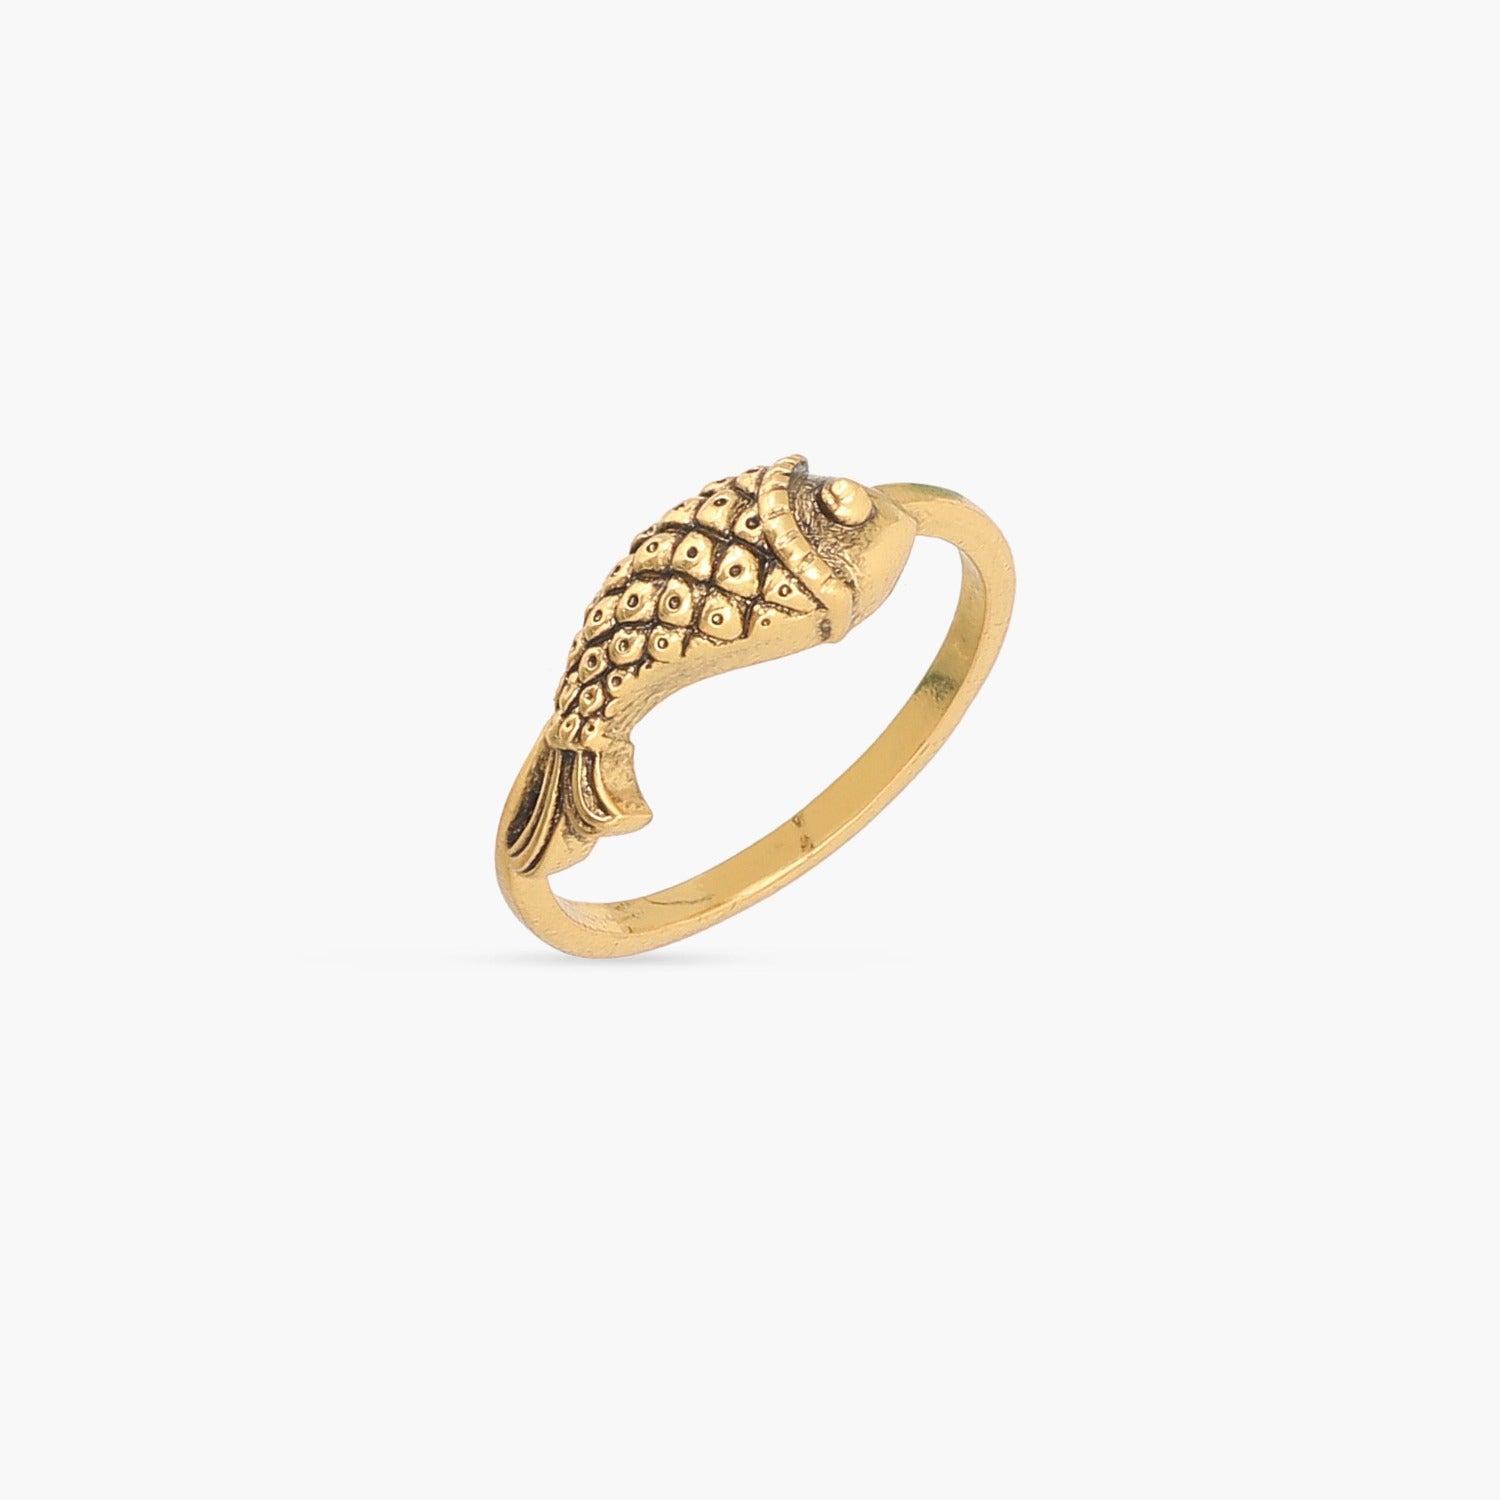 Buy Simple Solitaire Diamond Finger Ring Online | ORRA